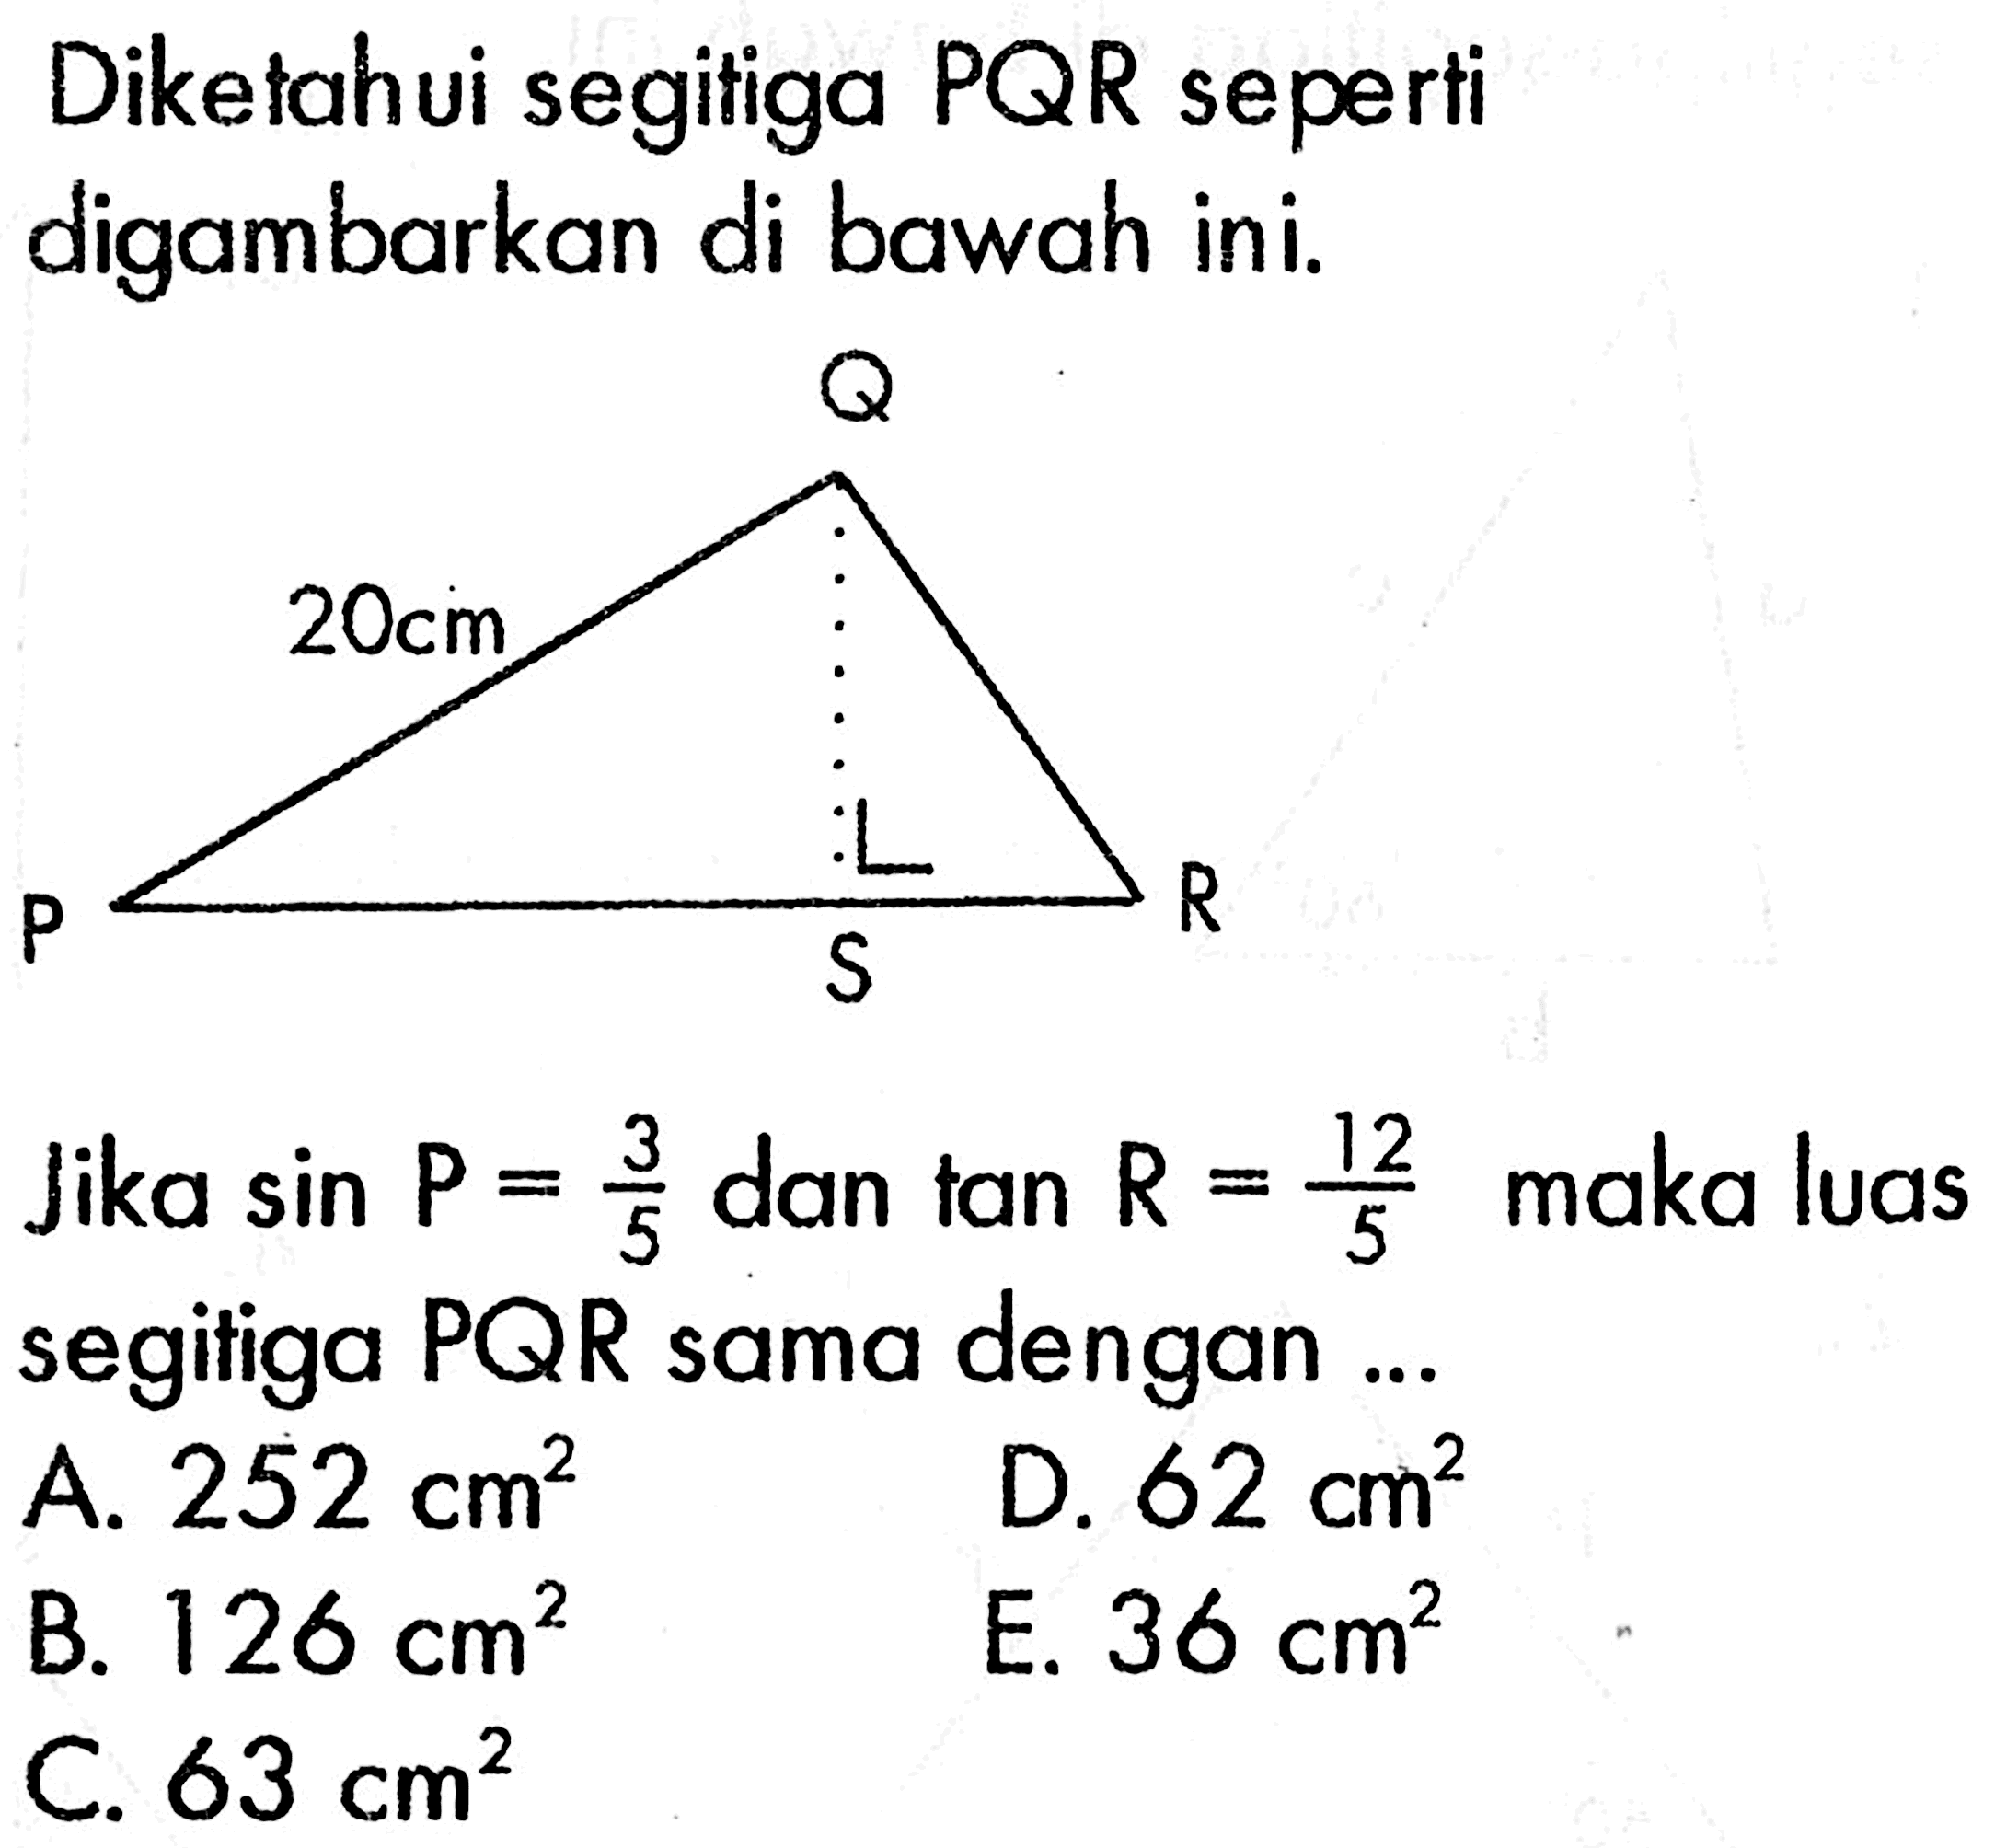 Diketahui segitiga  PQR  seperti digambarkan di bawahini.Jika  sin P=3/5  dan tan  R=12/5  maka luas segitiga  PQR  sama dengan ...